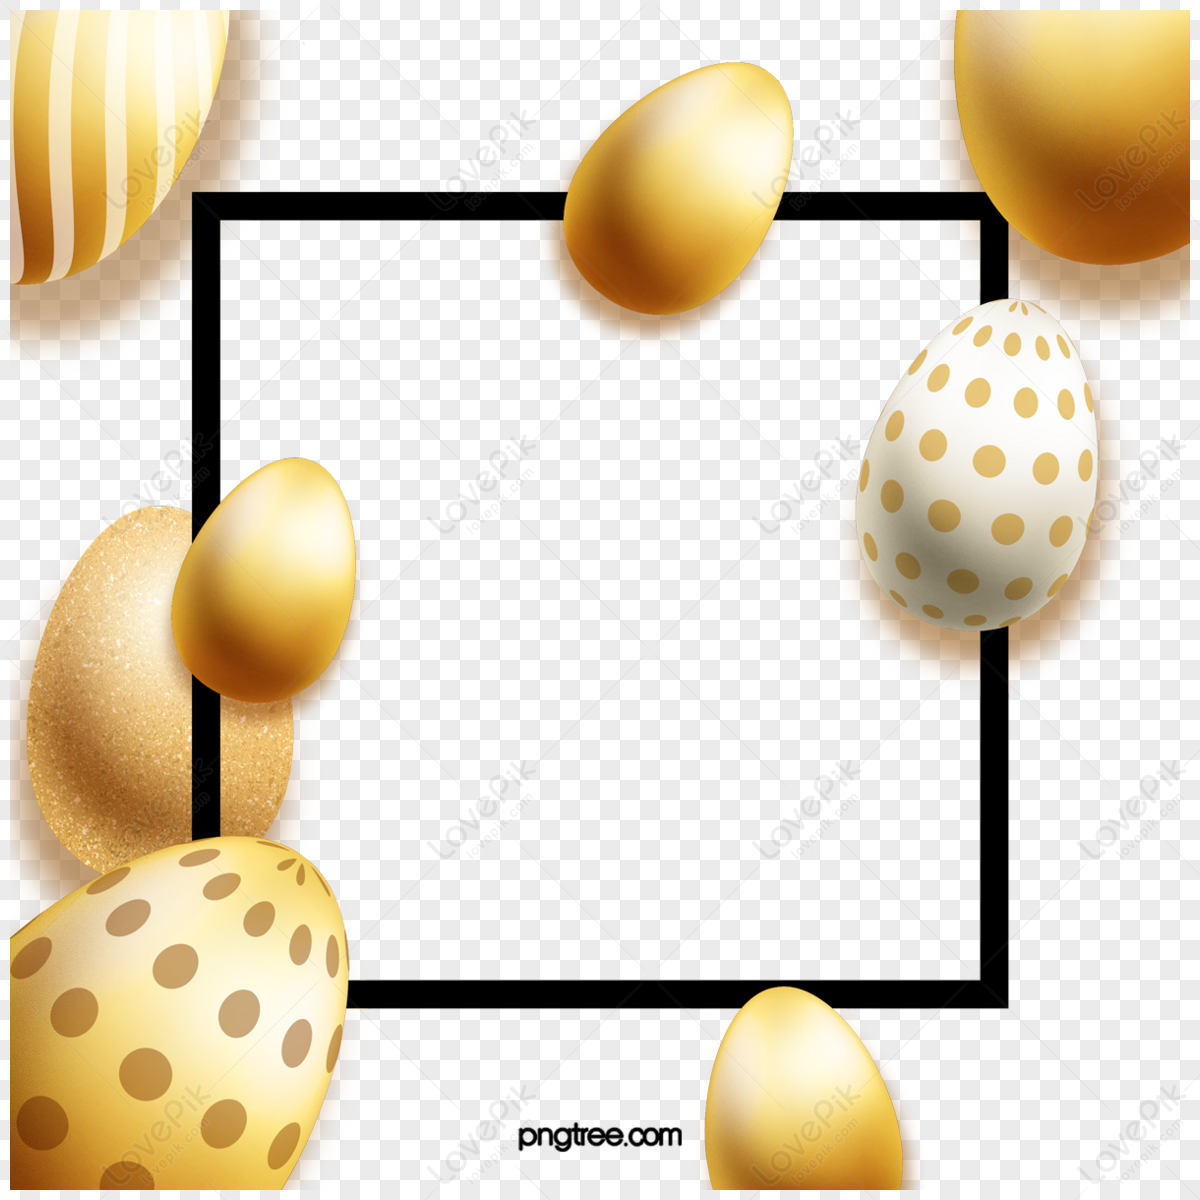 Bowl of Eggs Golden PNG Images & PSDs for Download